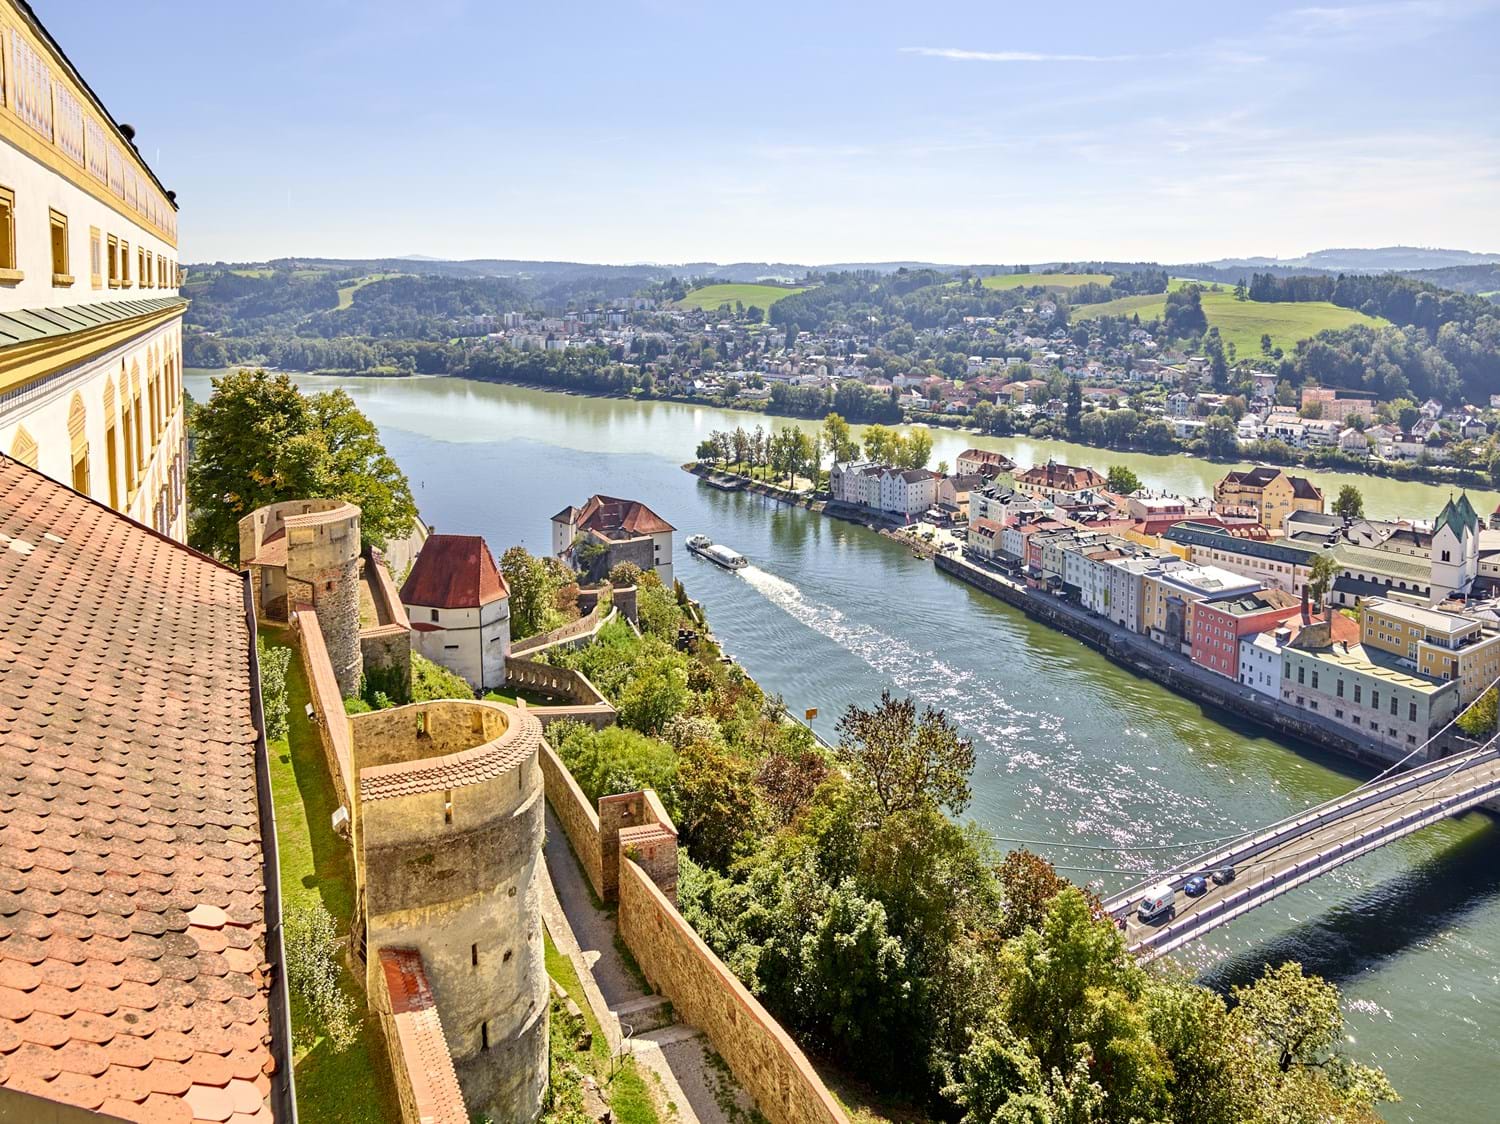 Aussicht von der Veste Oberhaus auf die Passauer Altstadt, Donau und Inn.